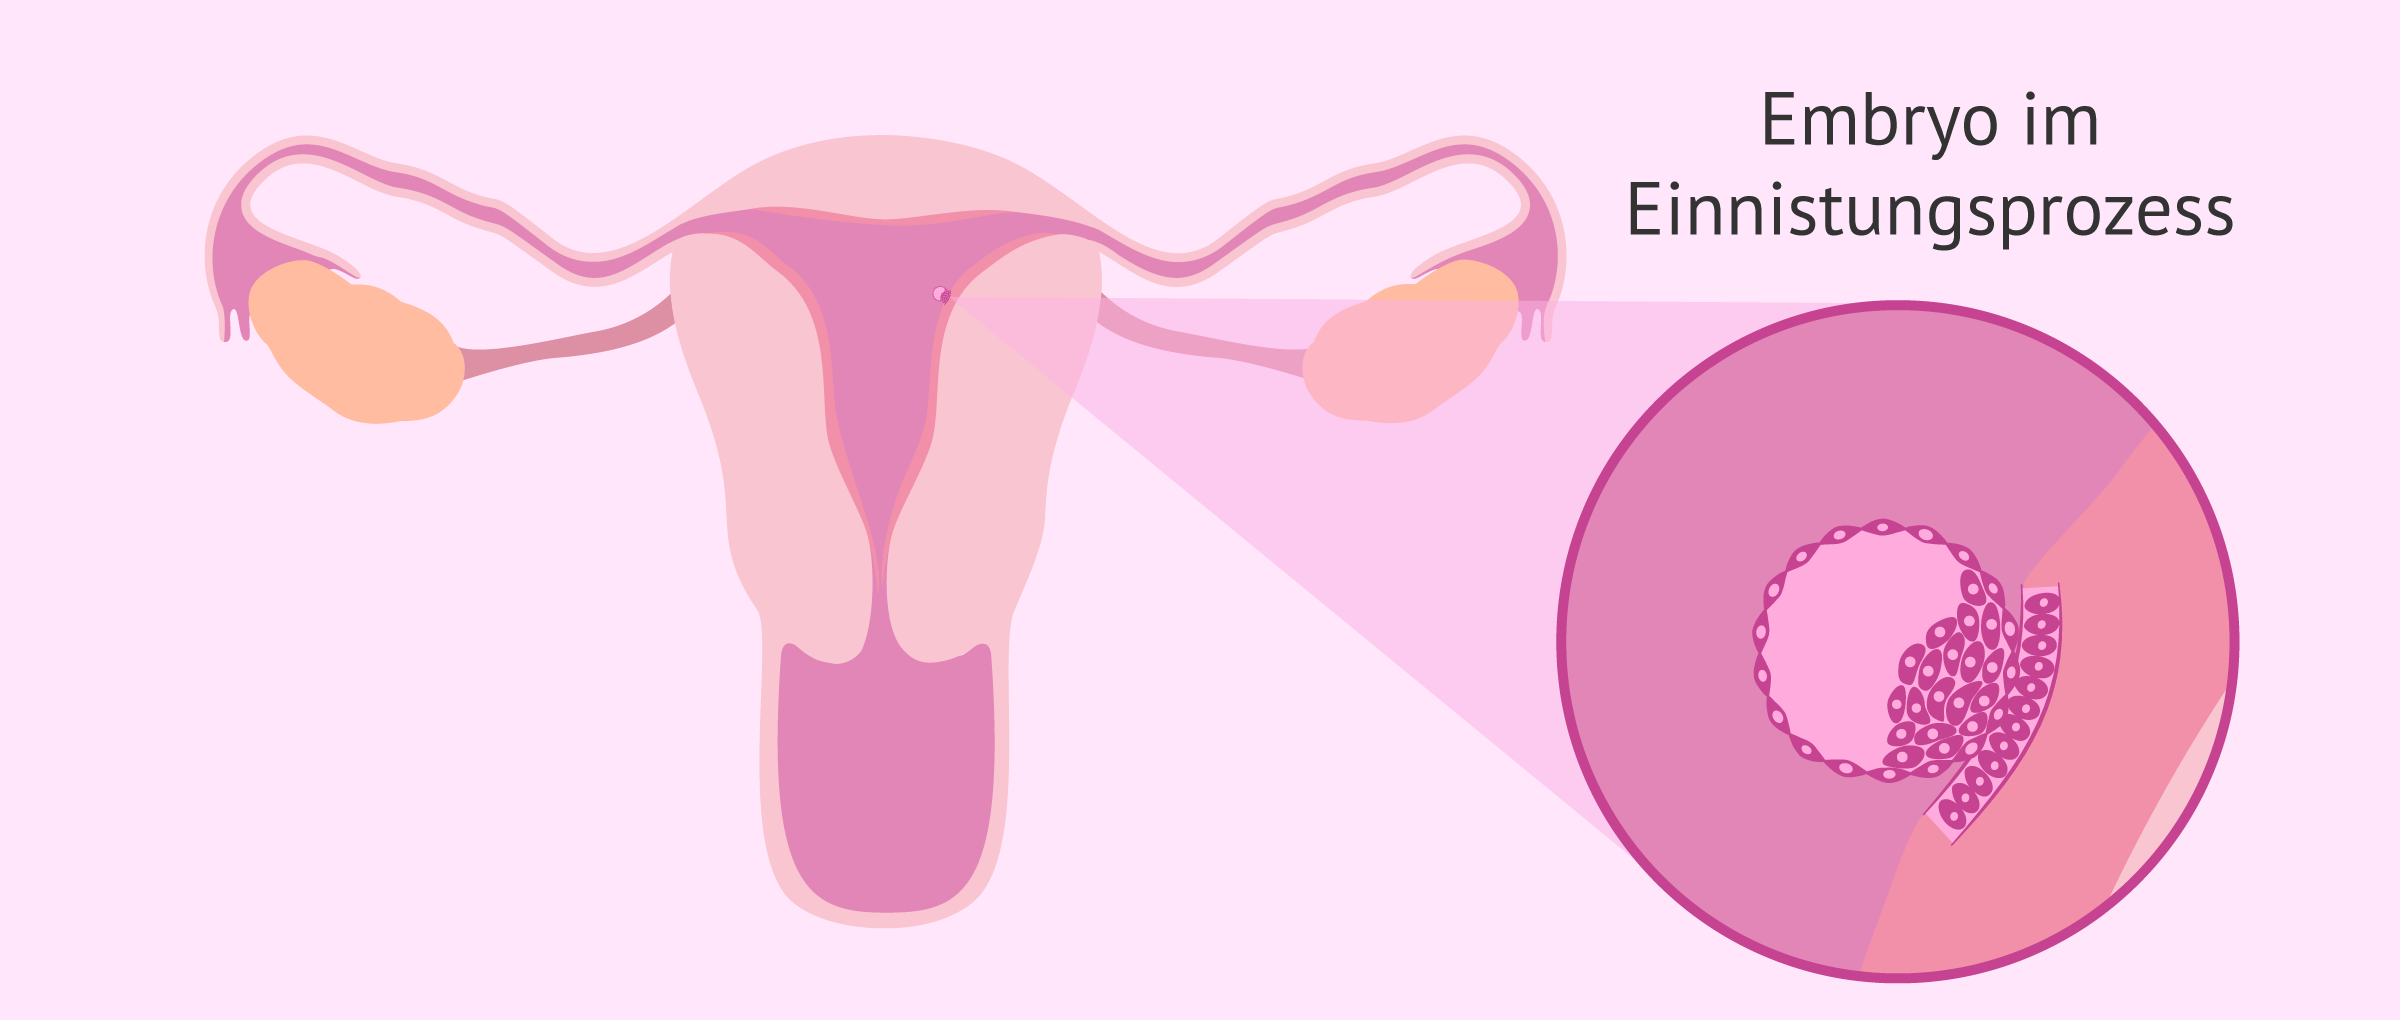 Embryo nistet sich in die empfängliche Gebärmutterschleimhaut ein